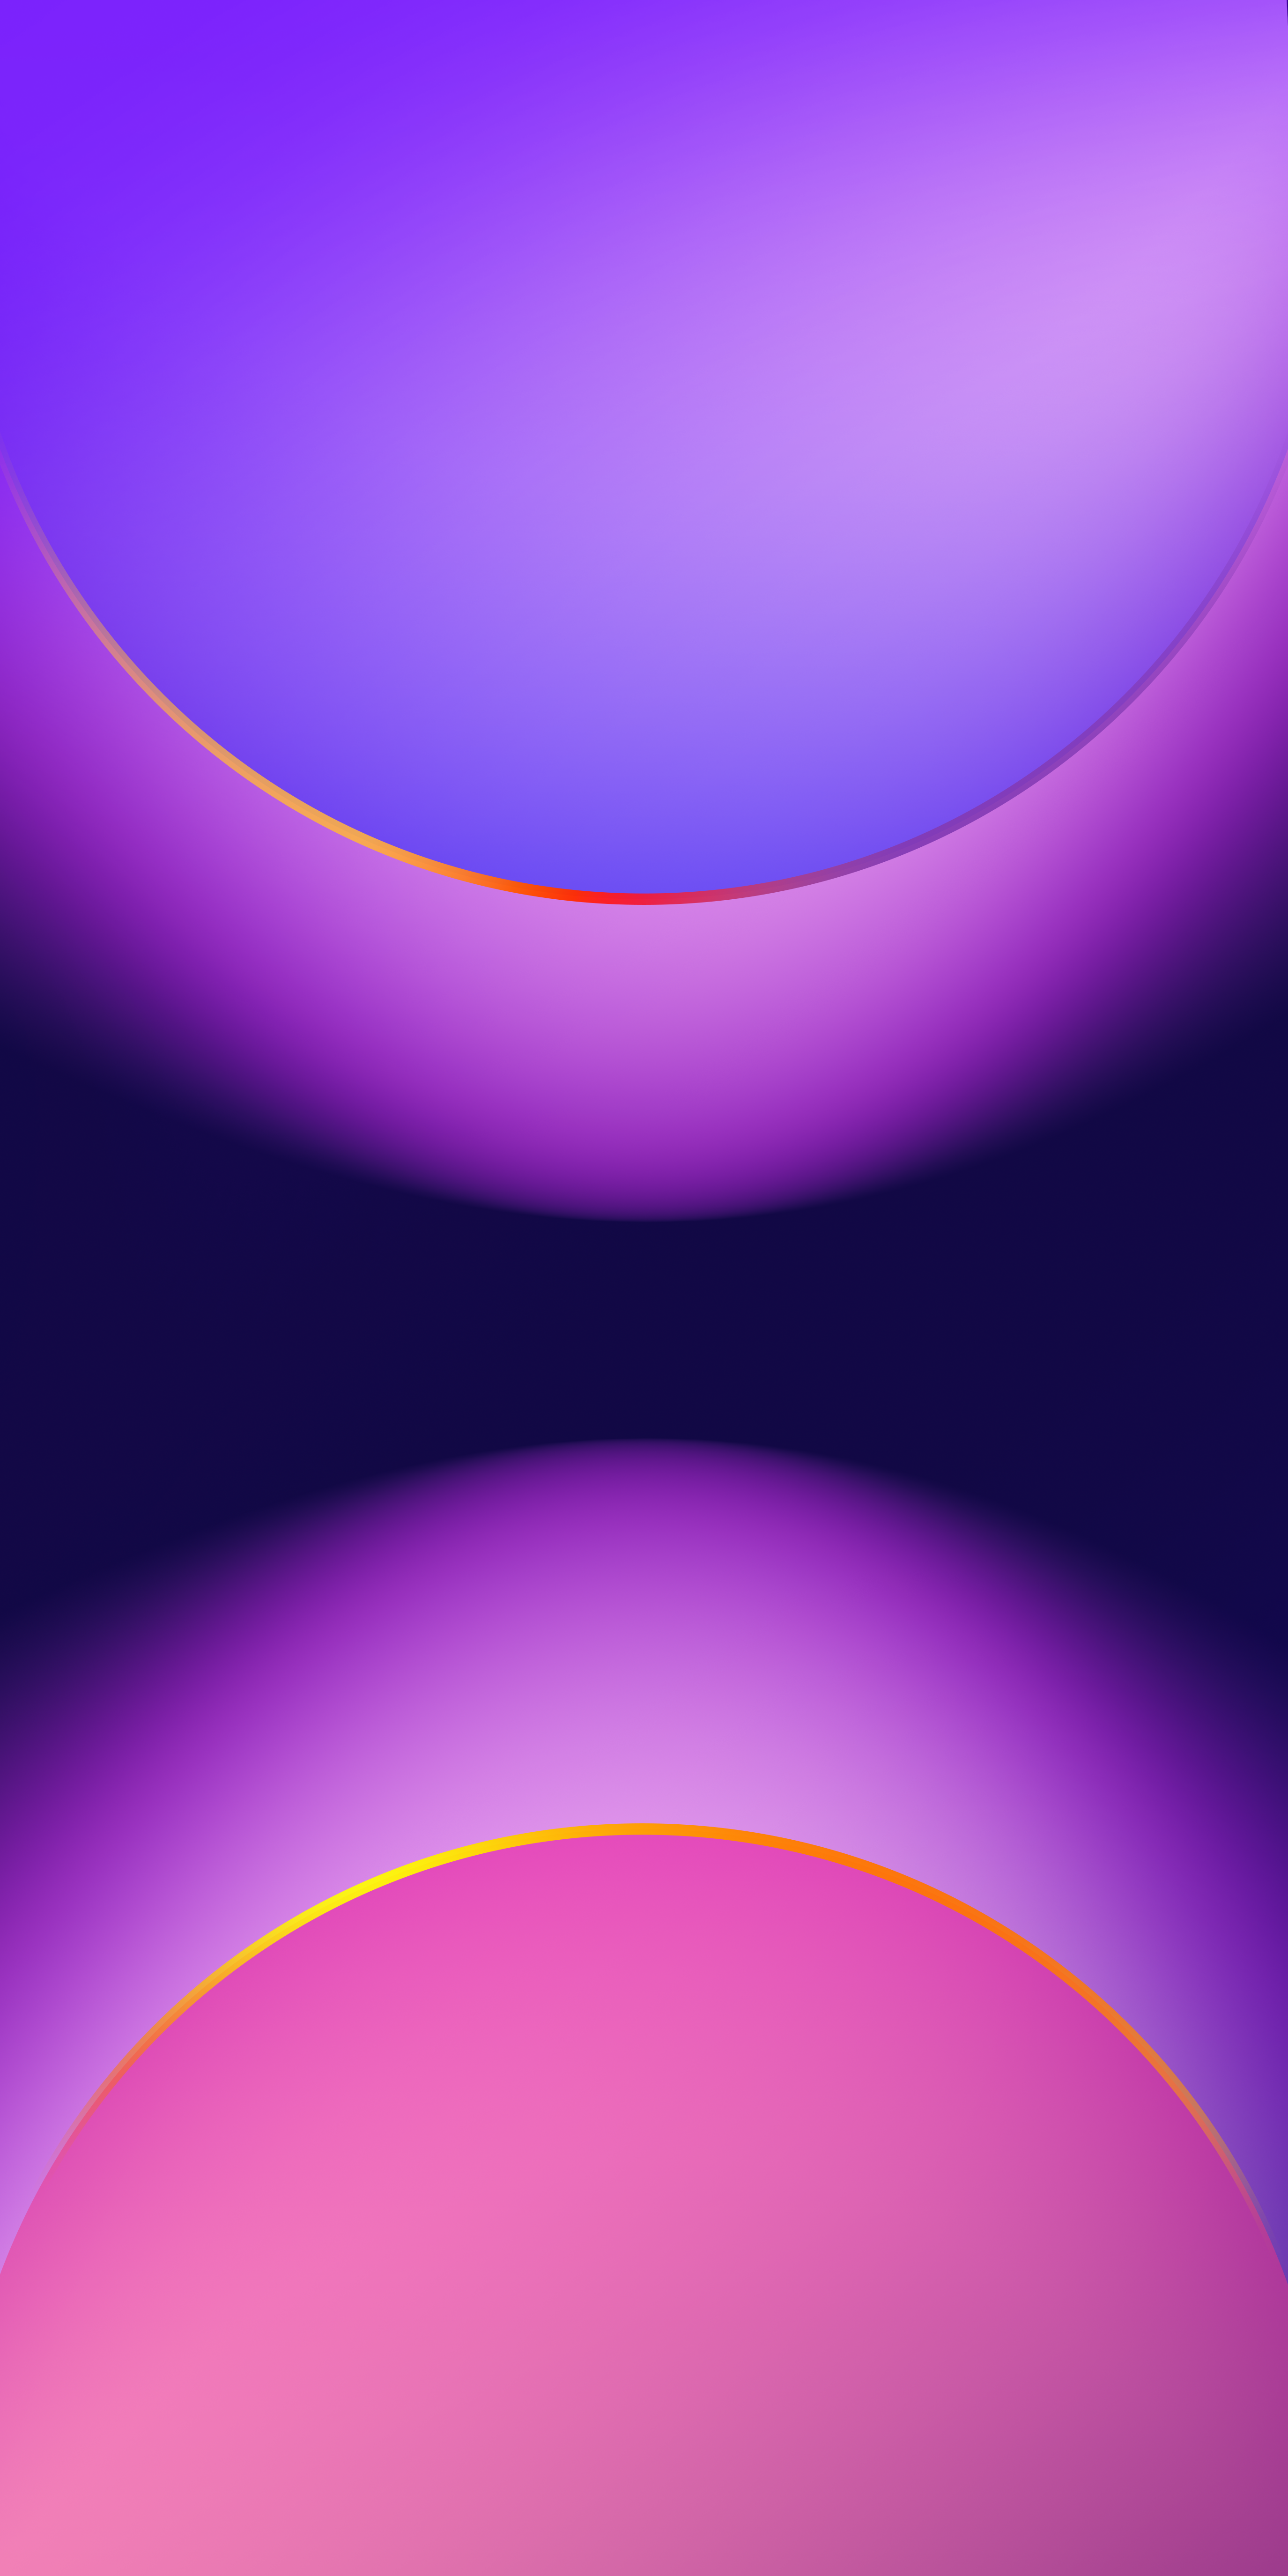 vz38-light-dot-digital-purple-line-pattern-background